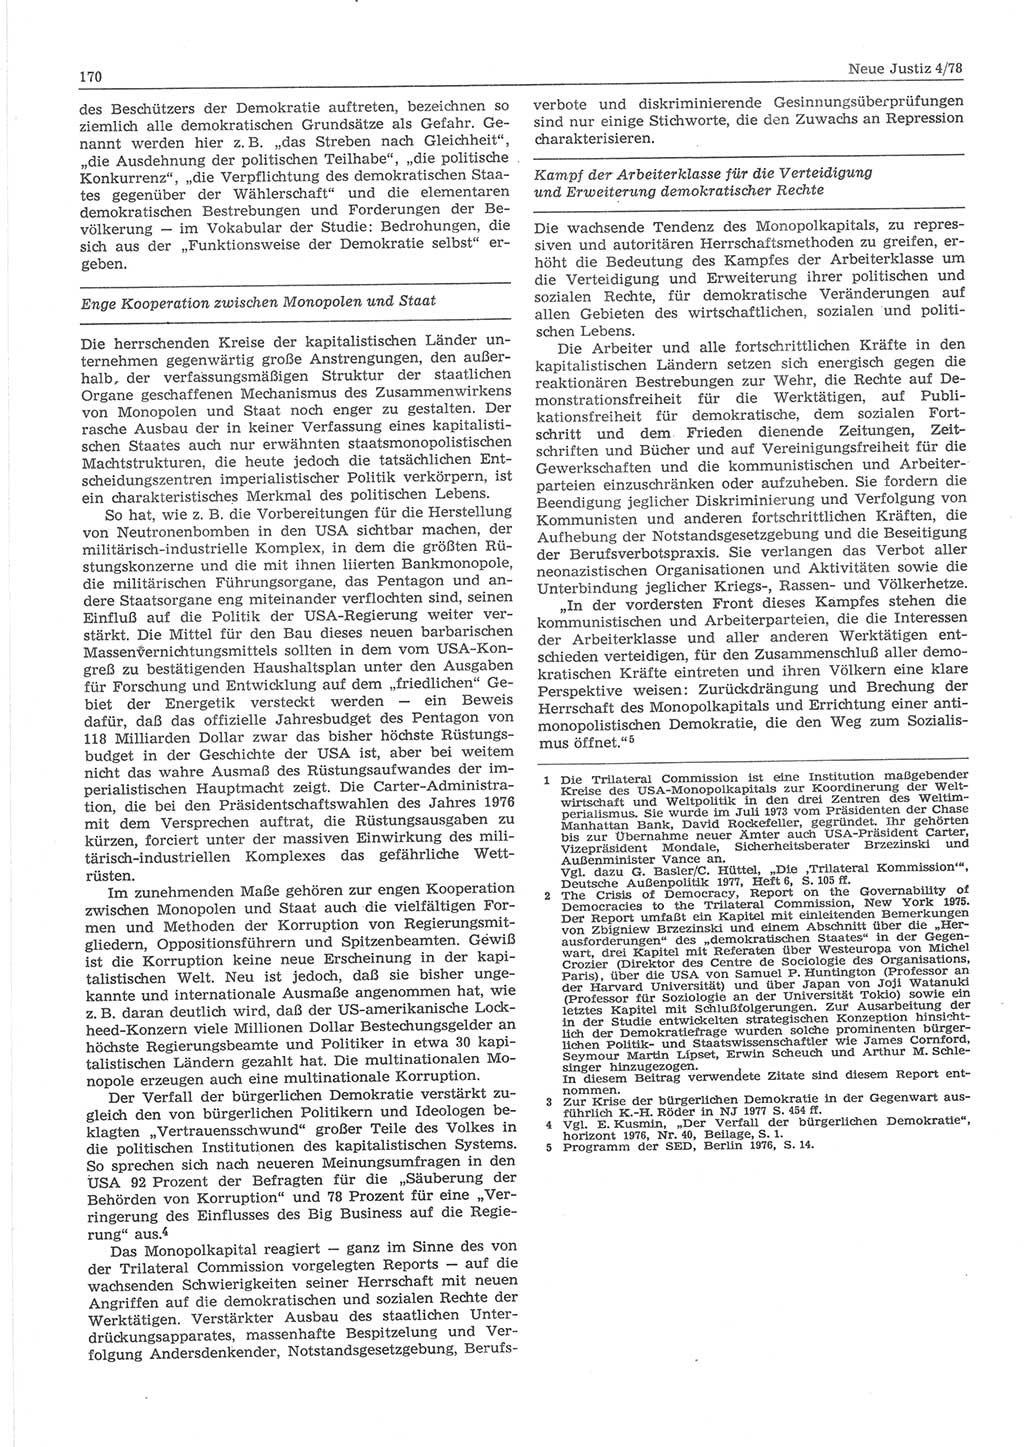 Neue Justiz (NJ), Zeitschrift für sozialistisches Recht und Gesetzlichkeit [Deutsche Demokratische Republik (DDR)], 32. Jahrgang 1978, Seite 170 (NJ DDR 1978, S. 170)